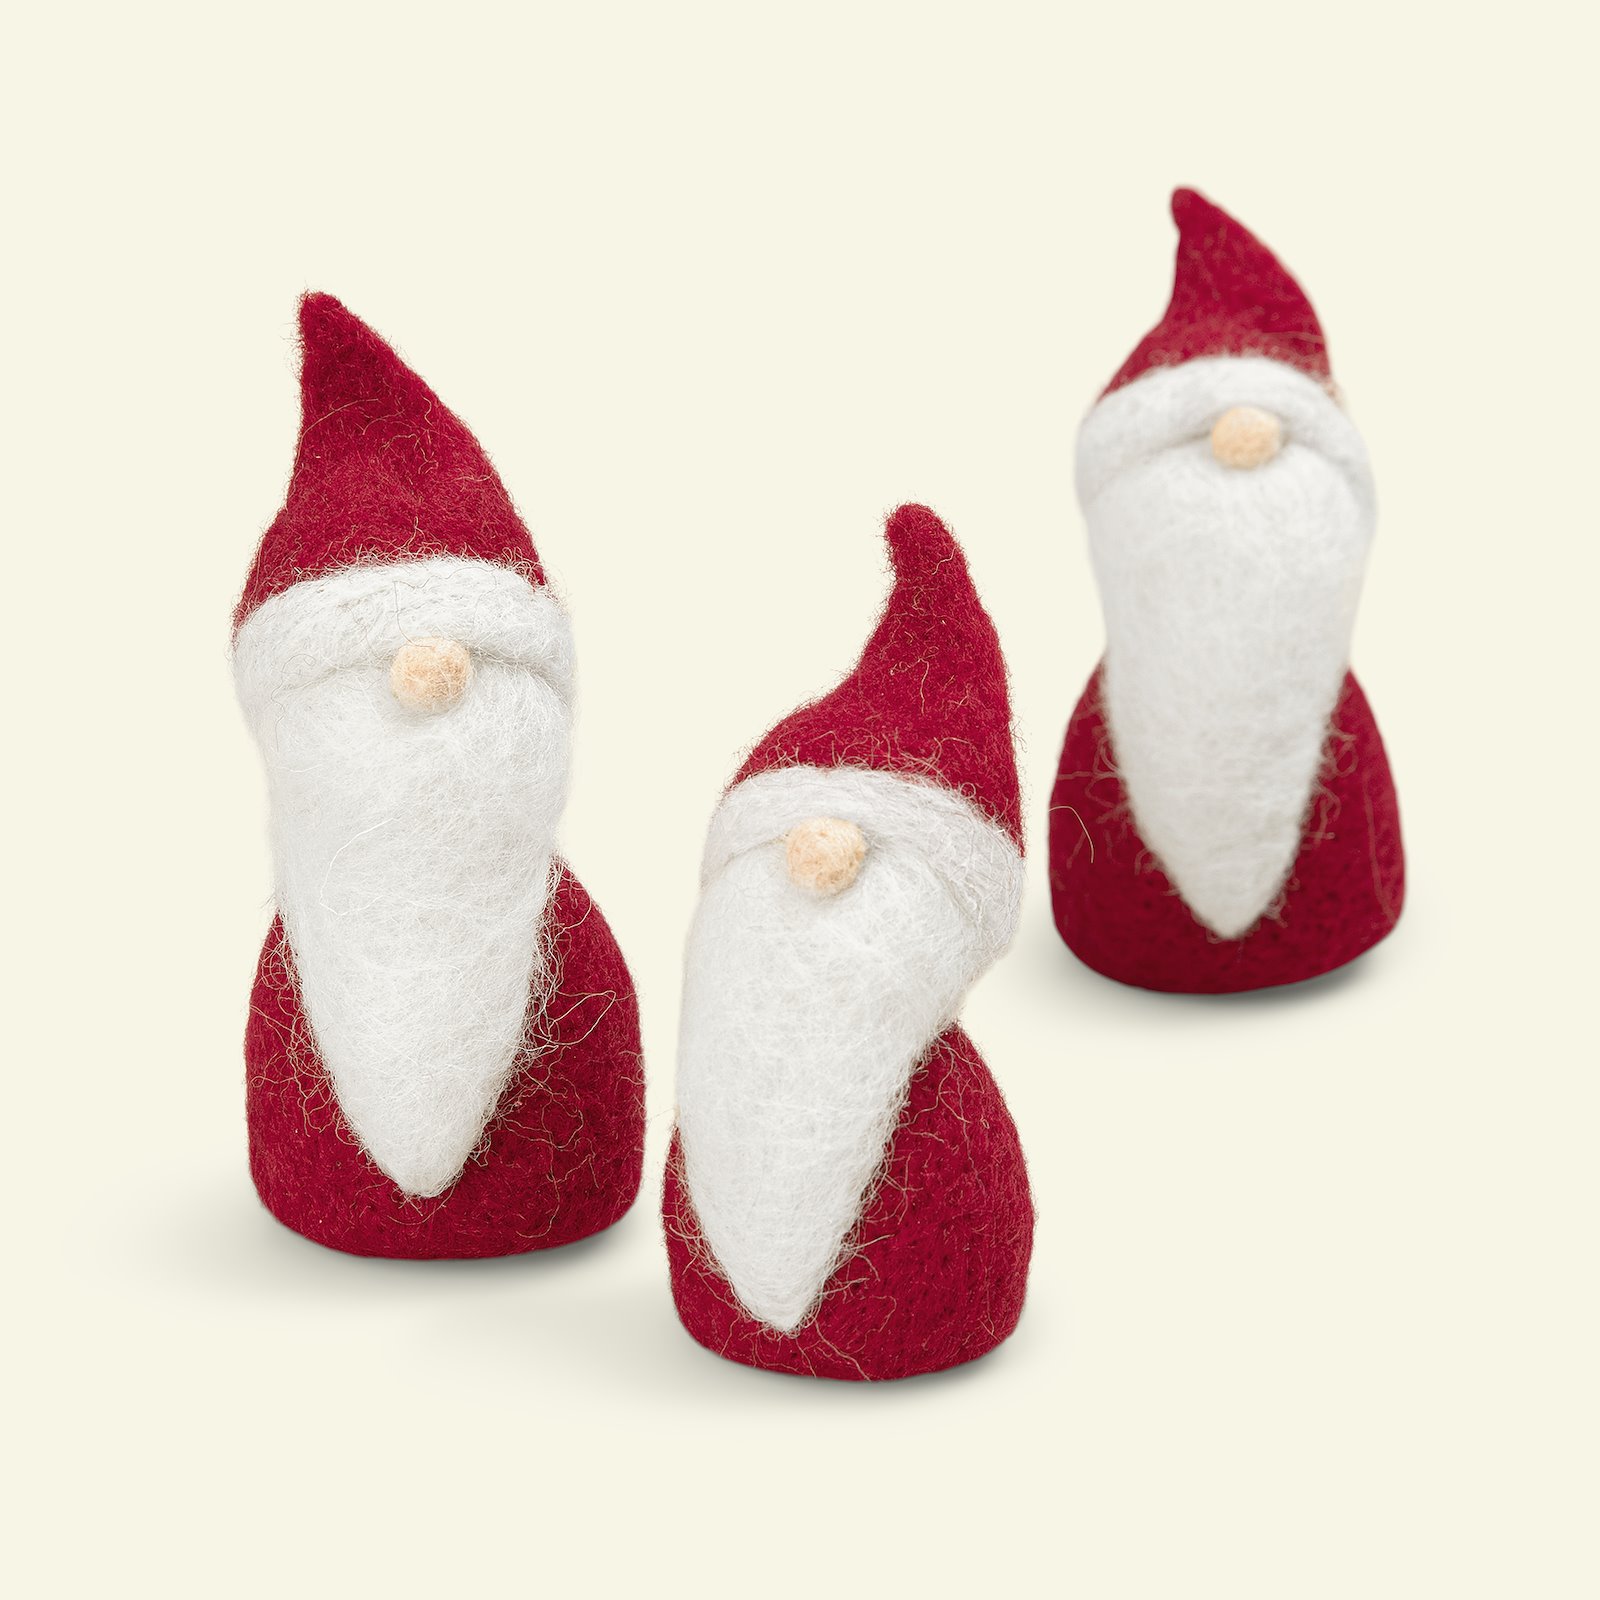 Filz-Kit Weihnachtsmann Rot/Weiß 3Stk 93579_pack